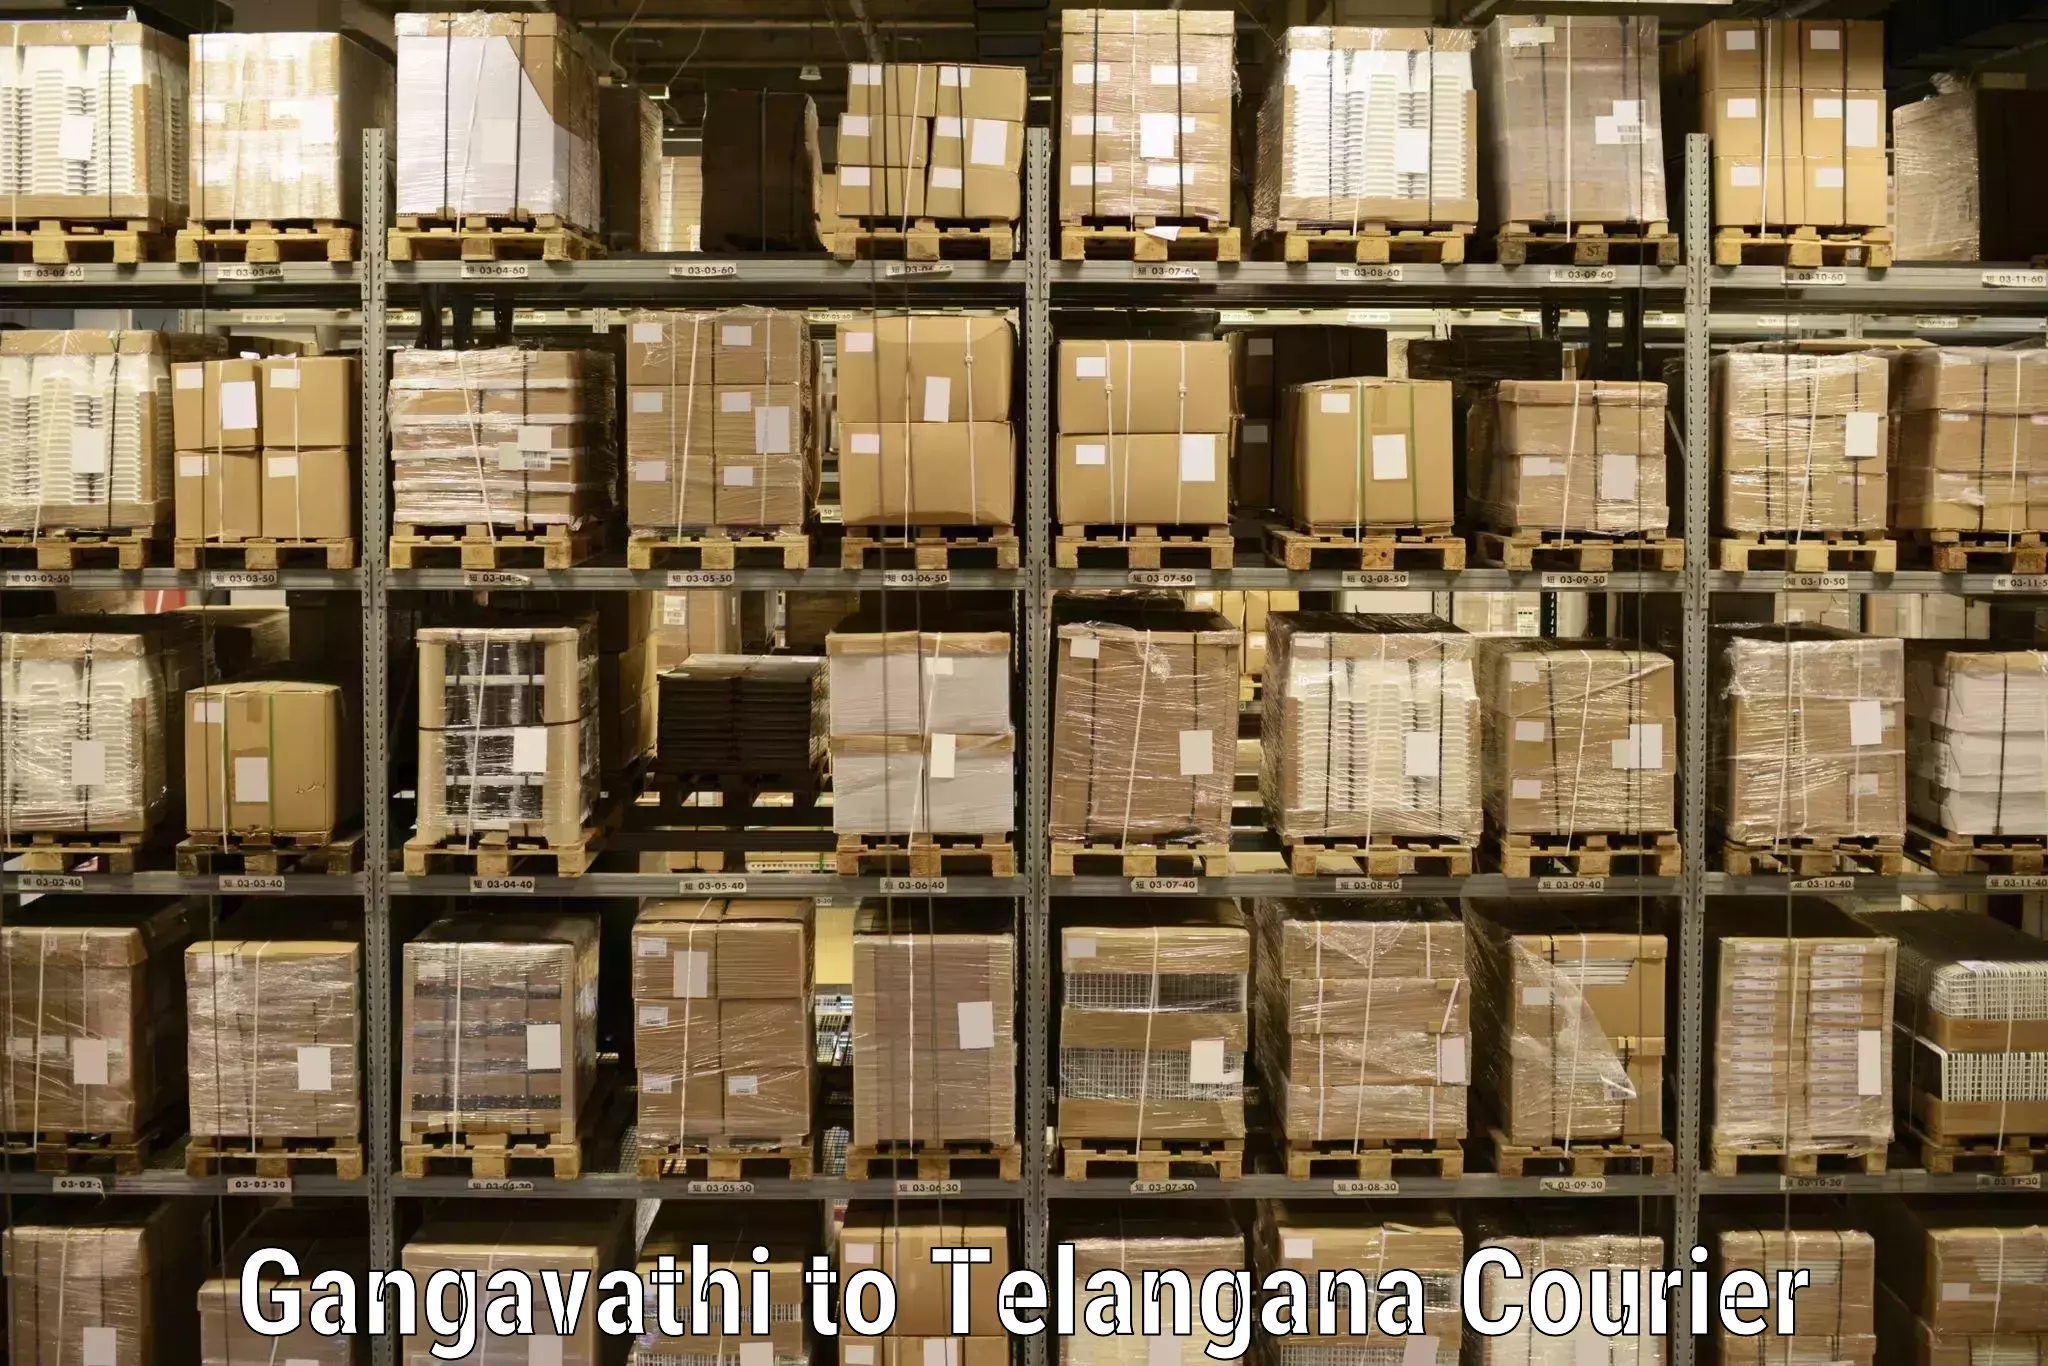 Smart shipping technology Gangavathi to Chevella